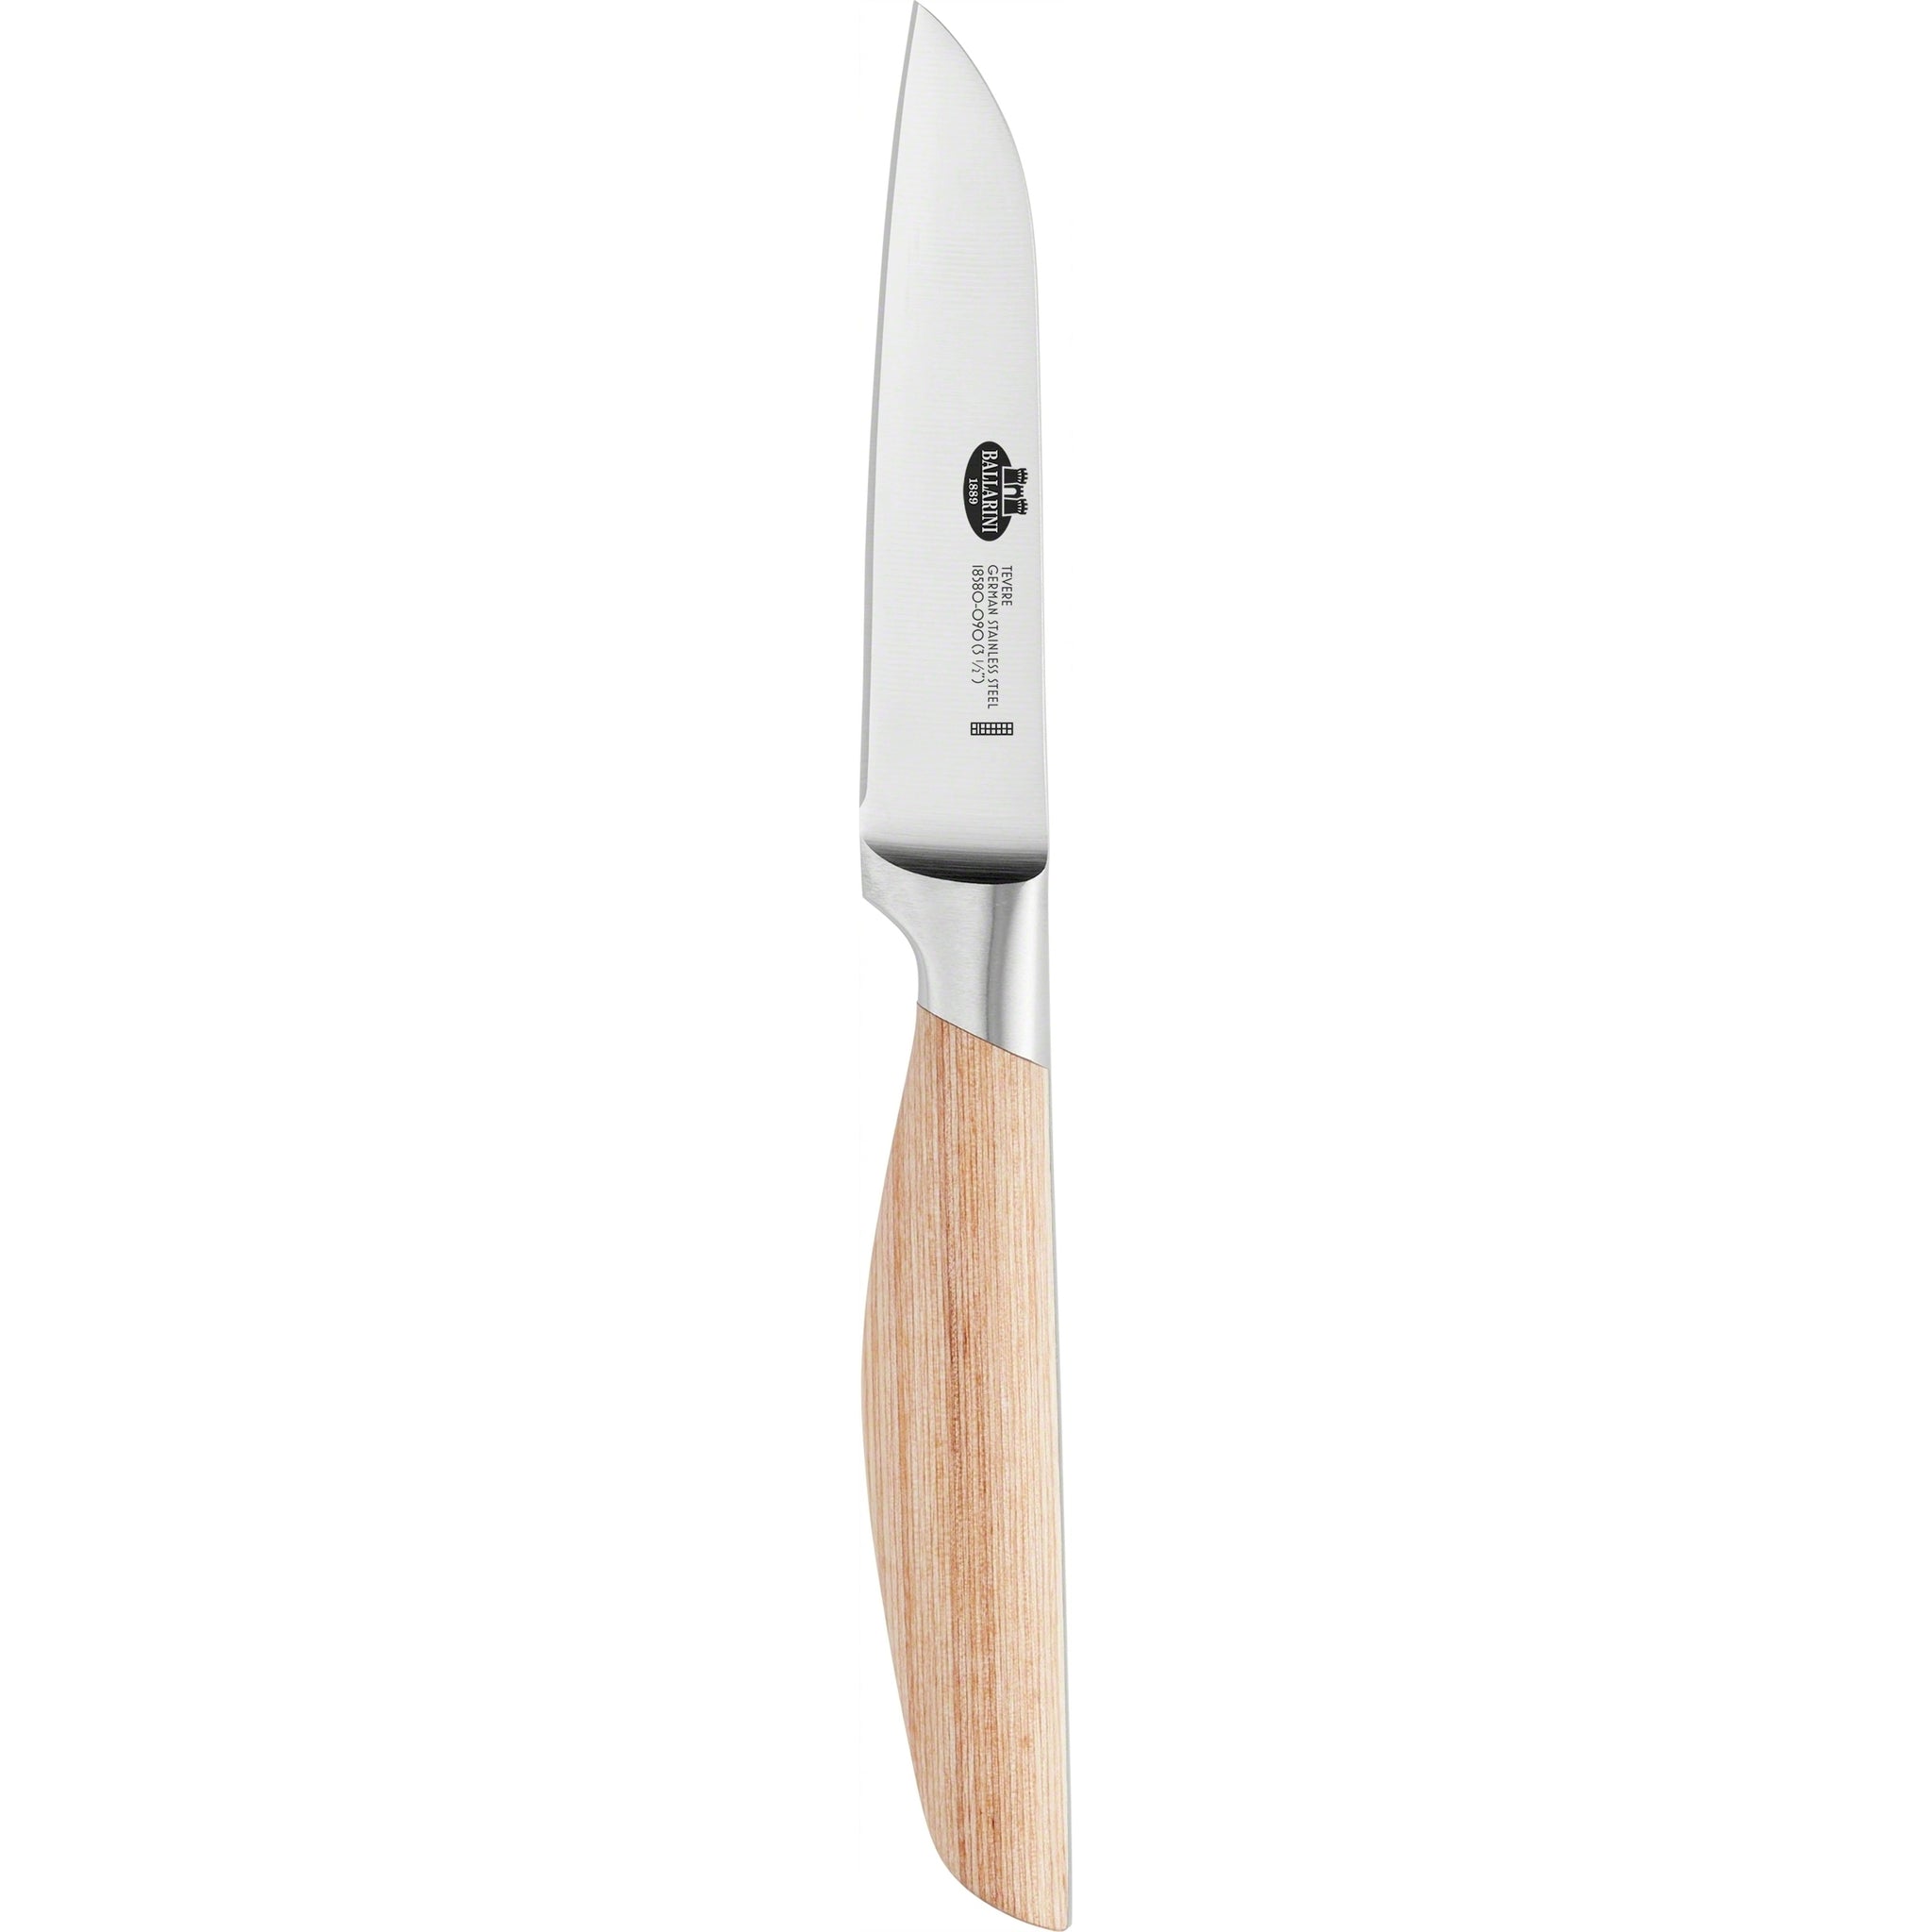 Ballarini Tevere Vegetable Knife 9cm